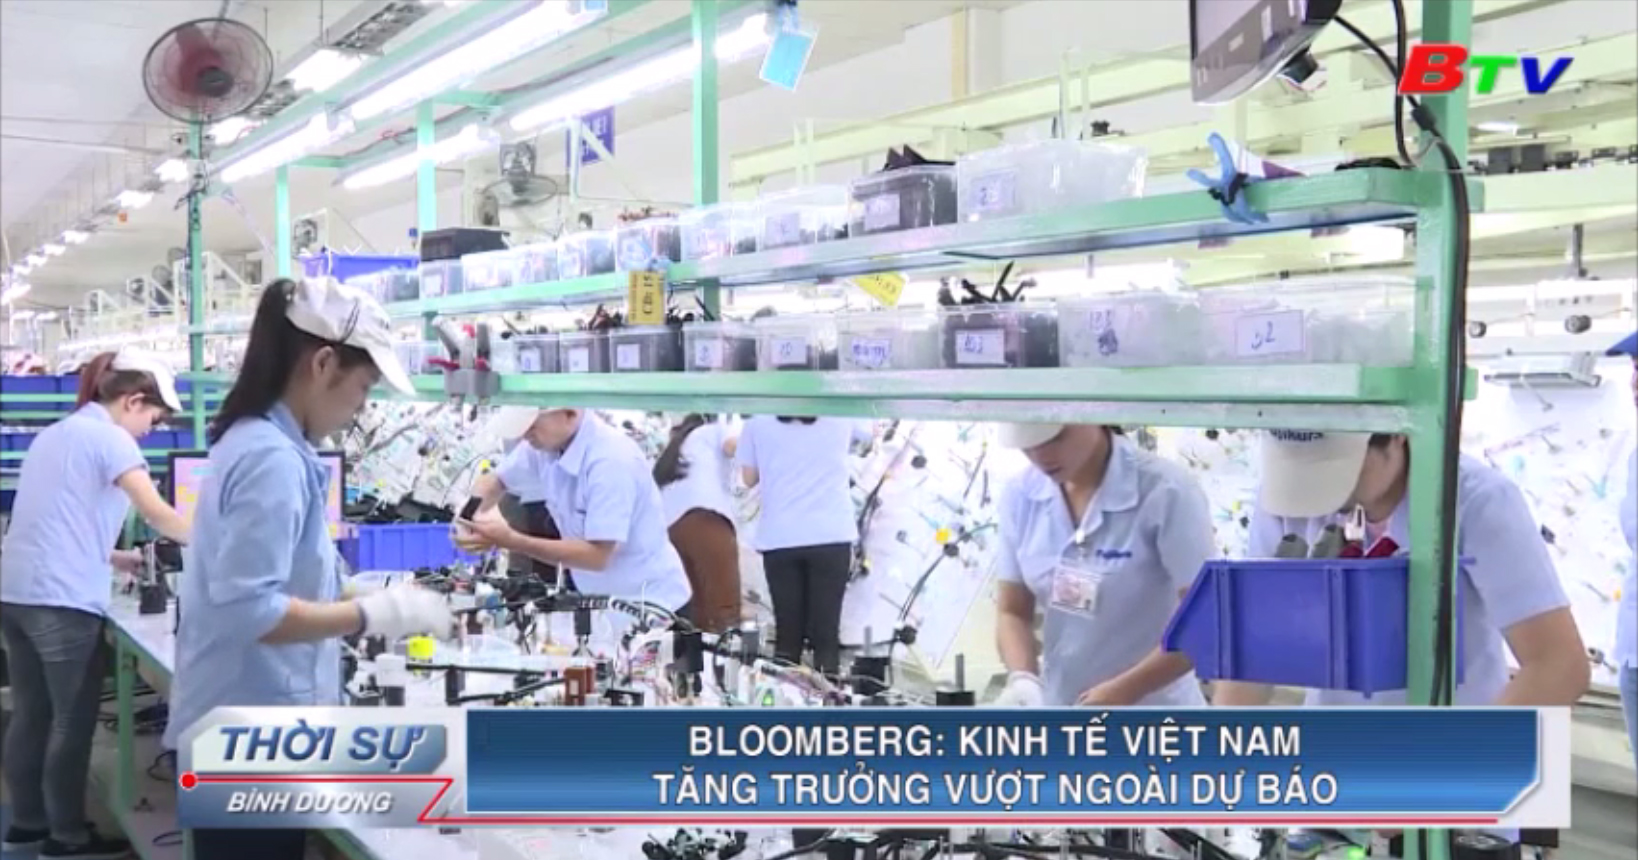 Bloomberg - Kinh tế Việt Nam tăng trưởng vượt ngoài dự báo